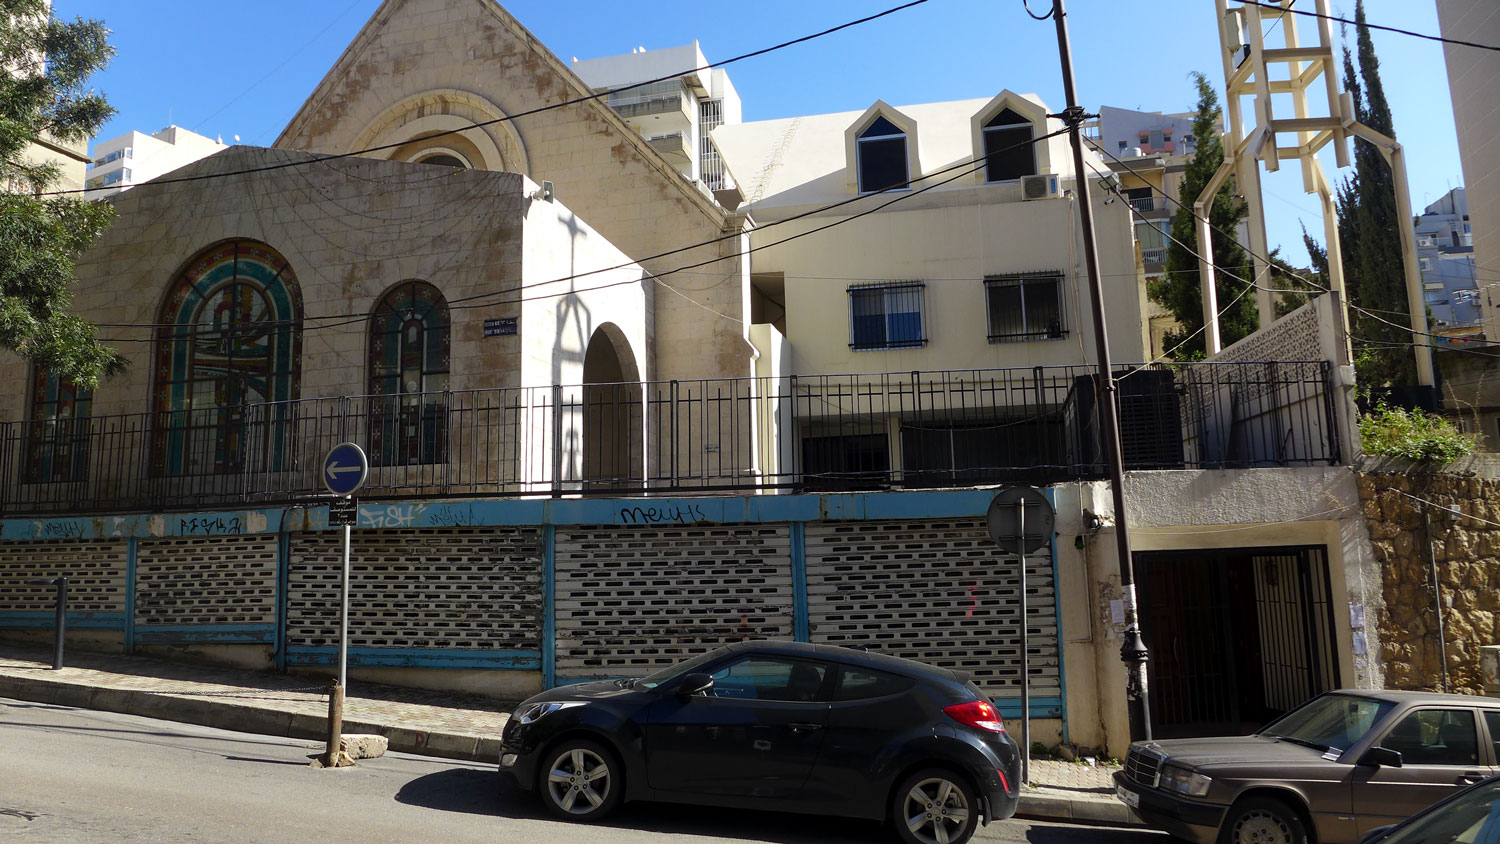 Le quartier Achrafief est un quartier chrétien de l’est de Beyrouth. Pendant la Guerre du Liban, Achrafieh devient la base des milices chrétiennes. Il y a des églises.